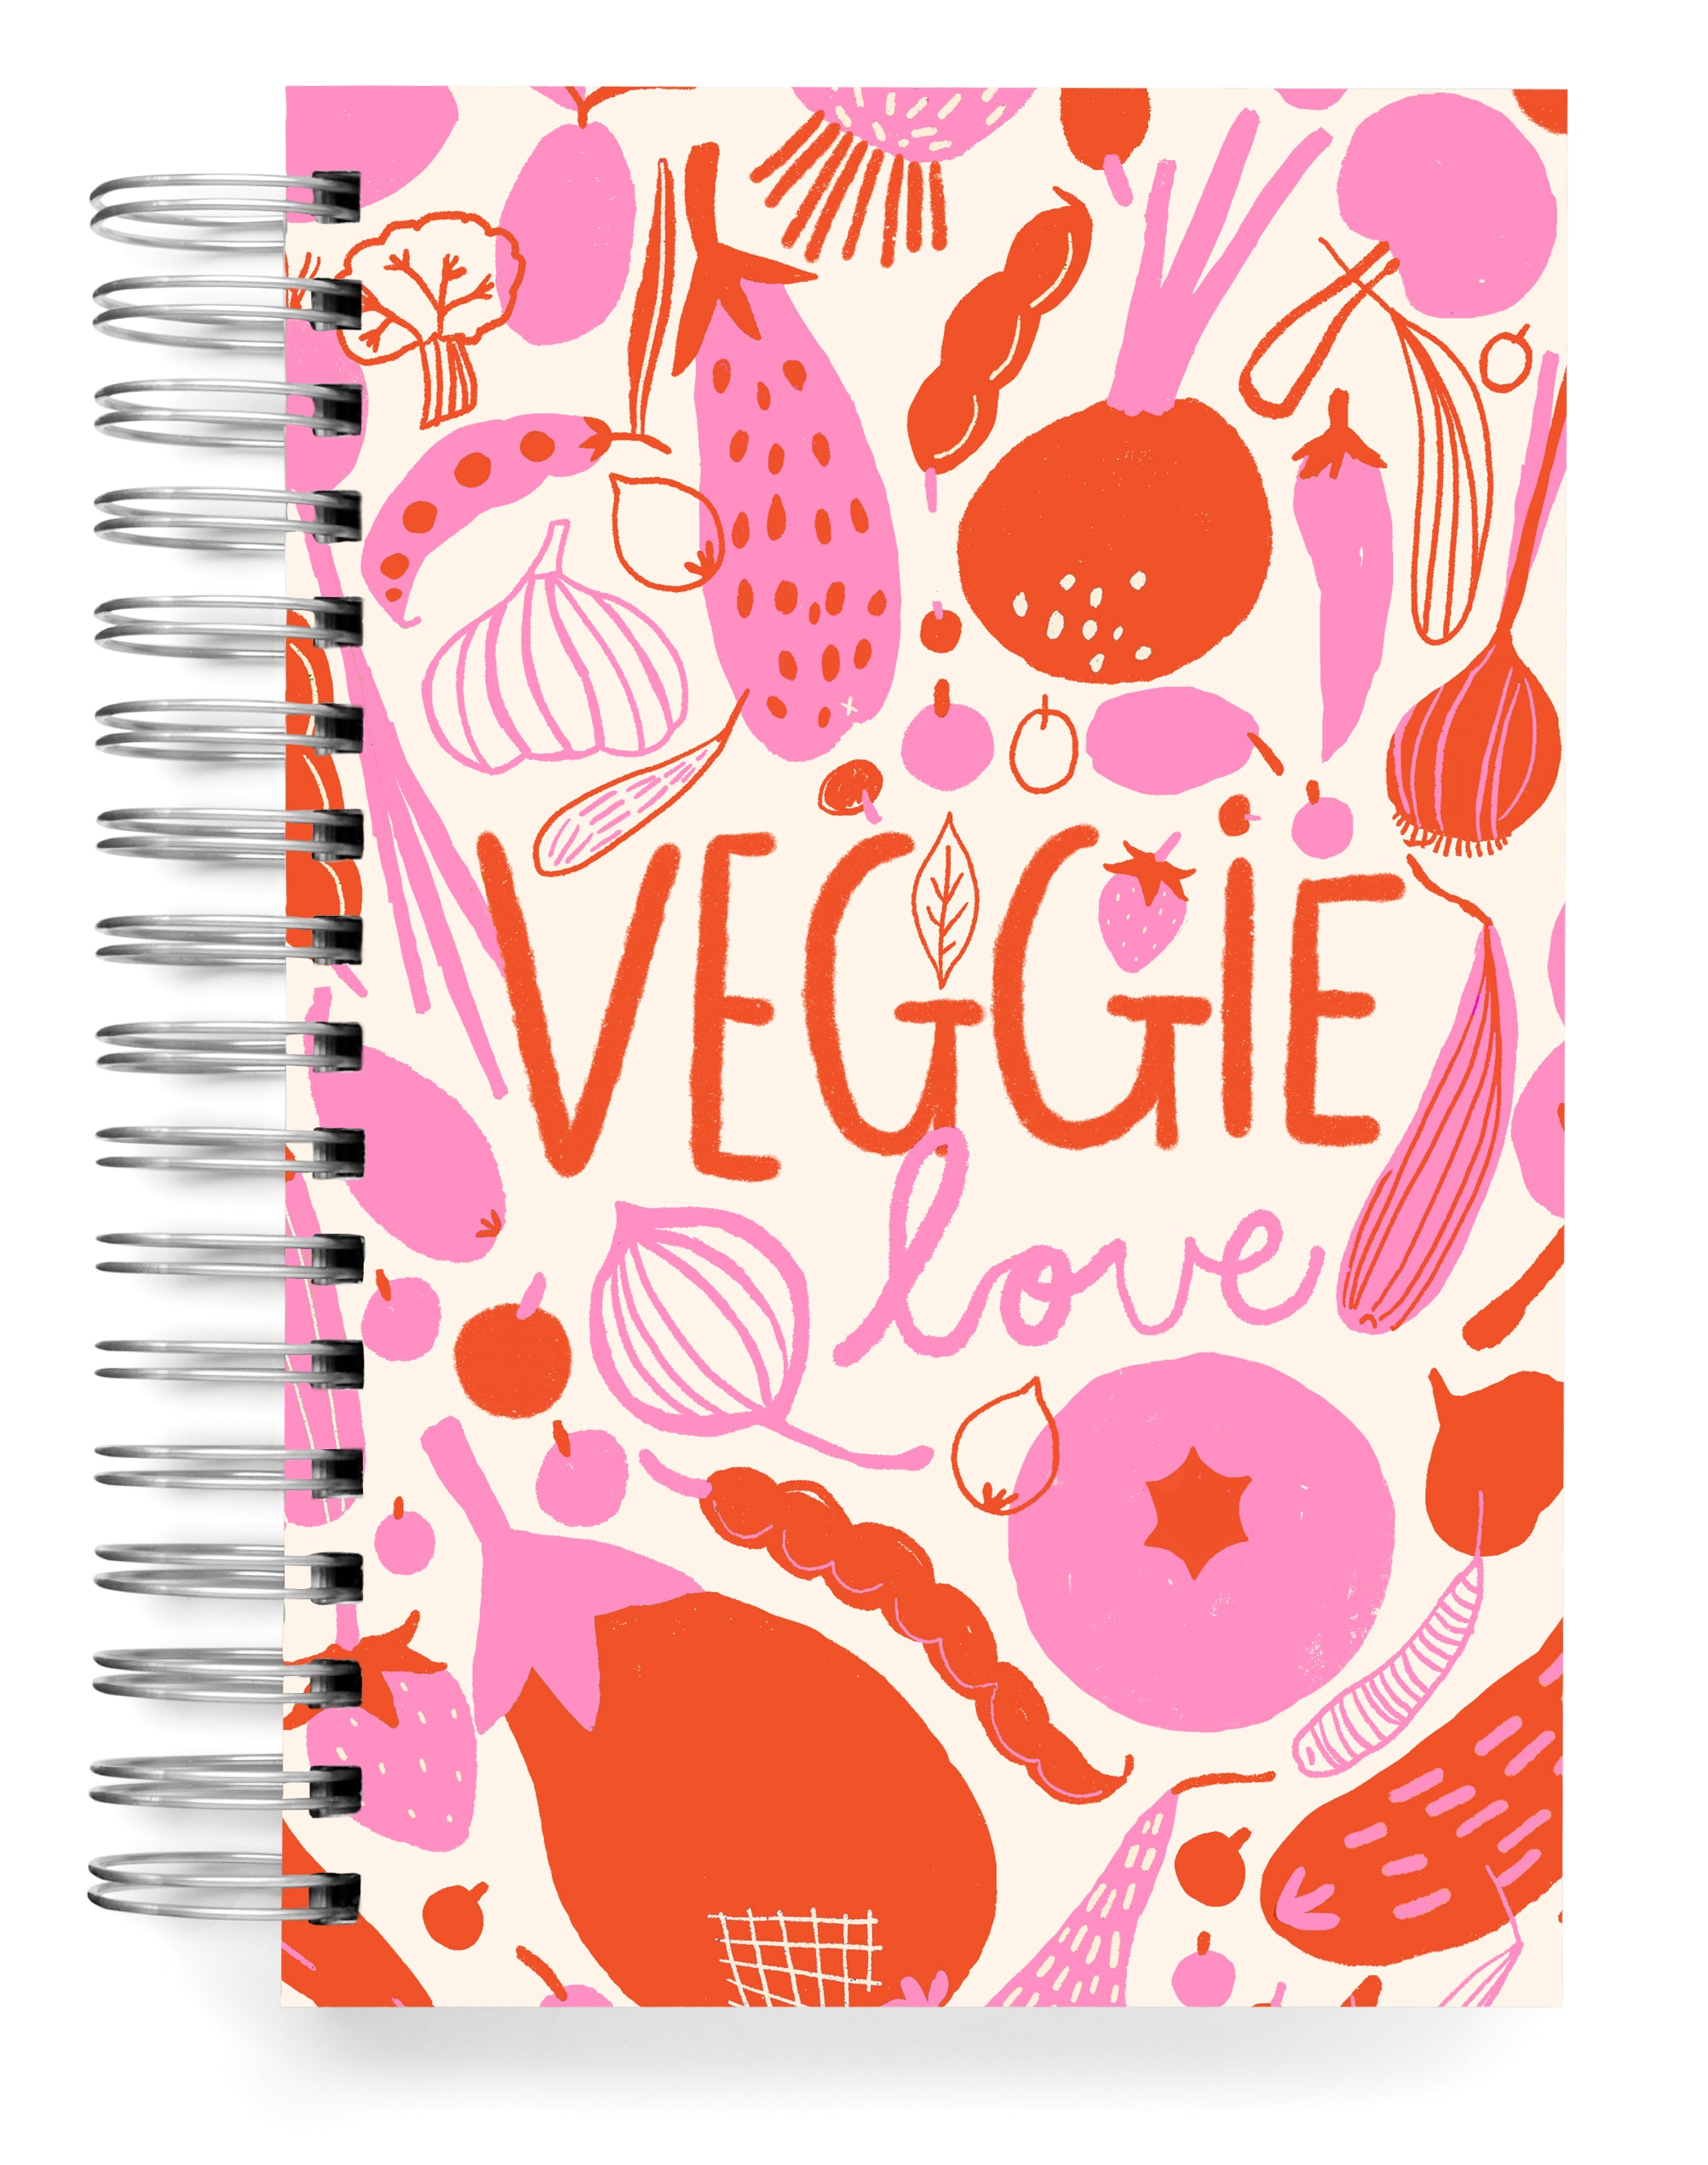 Veggie love cream Jumbo Journal